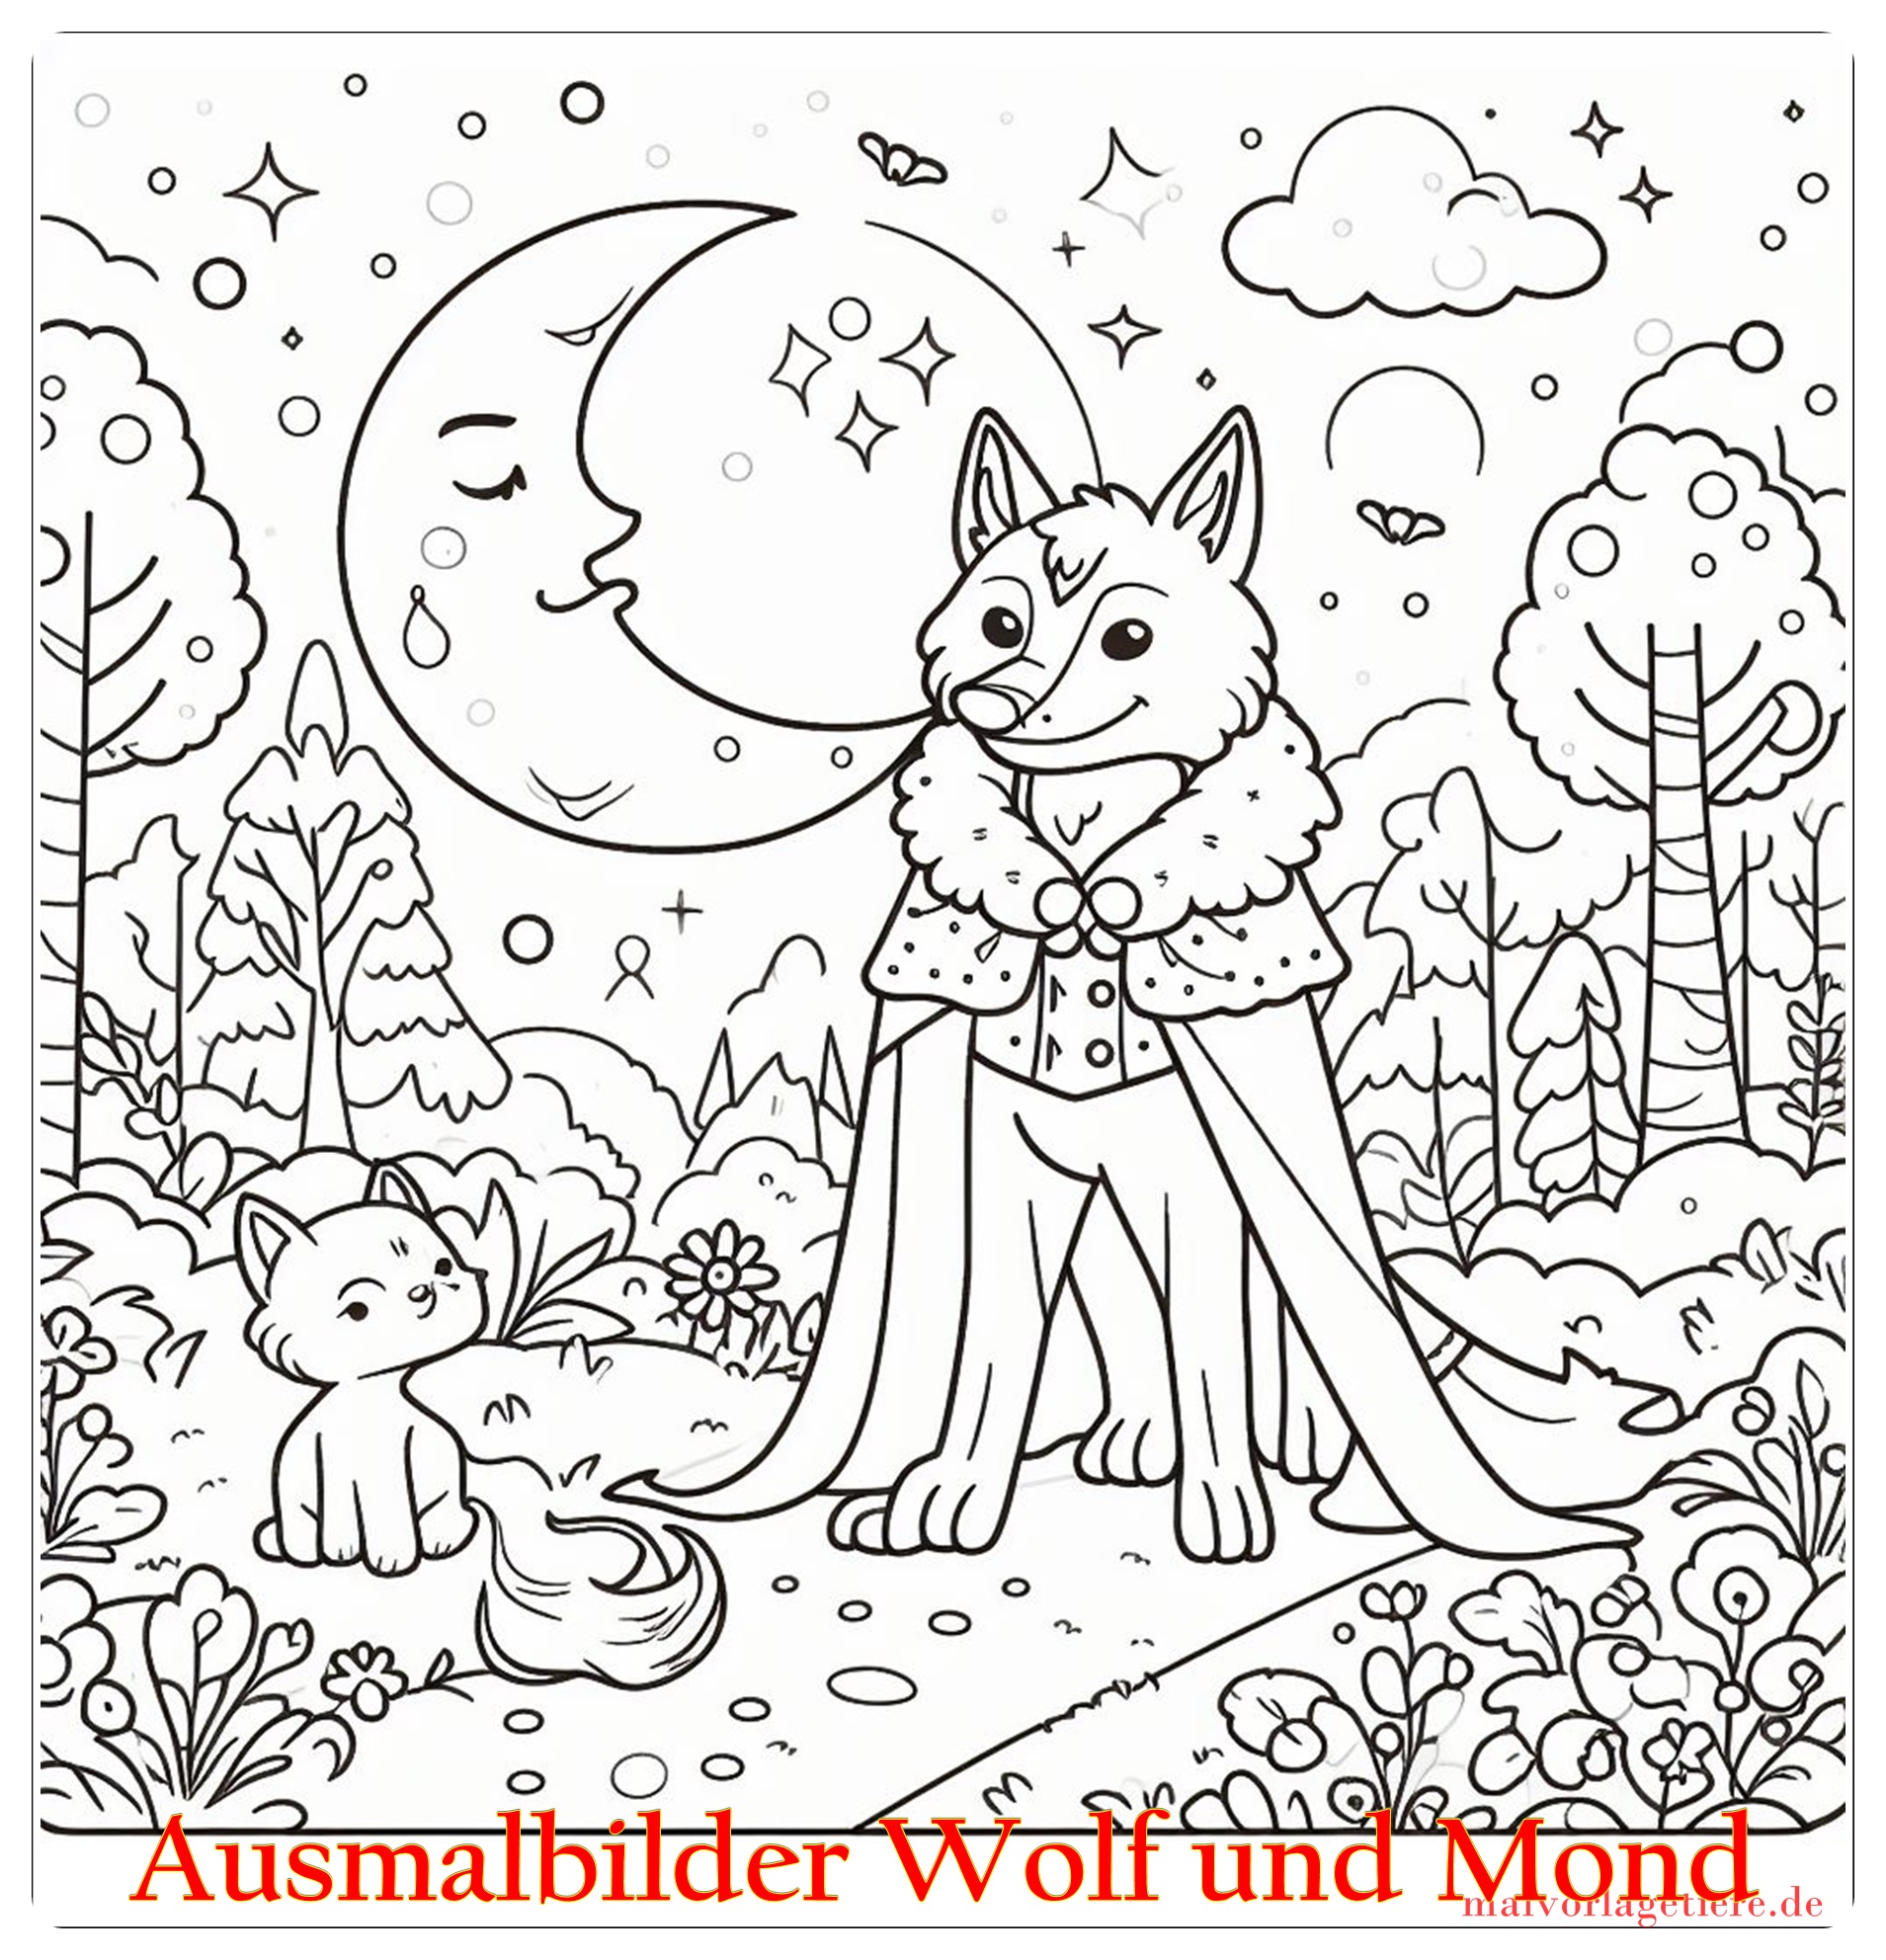 Ausmalbilder Wolf und Mond 07 by malvorlagetiere